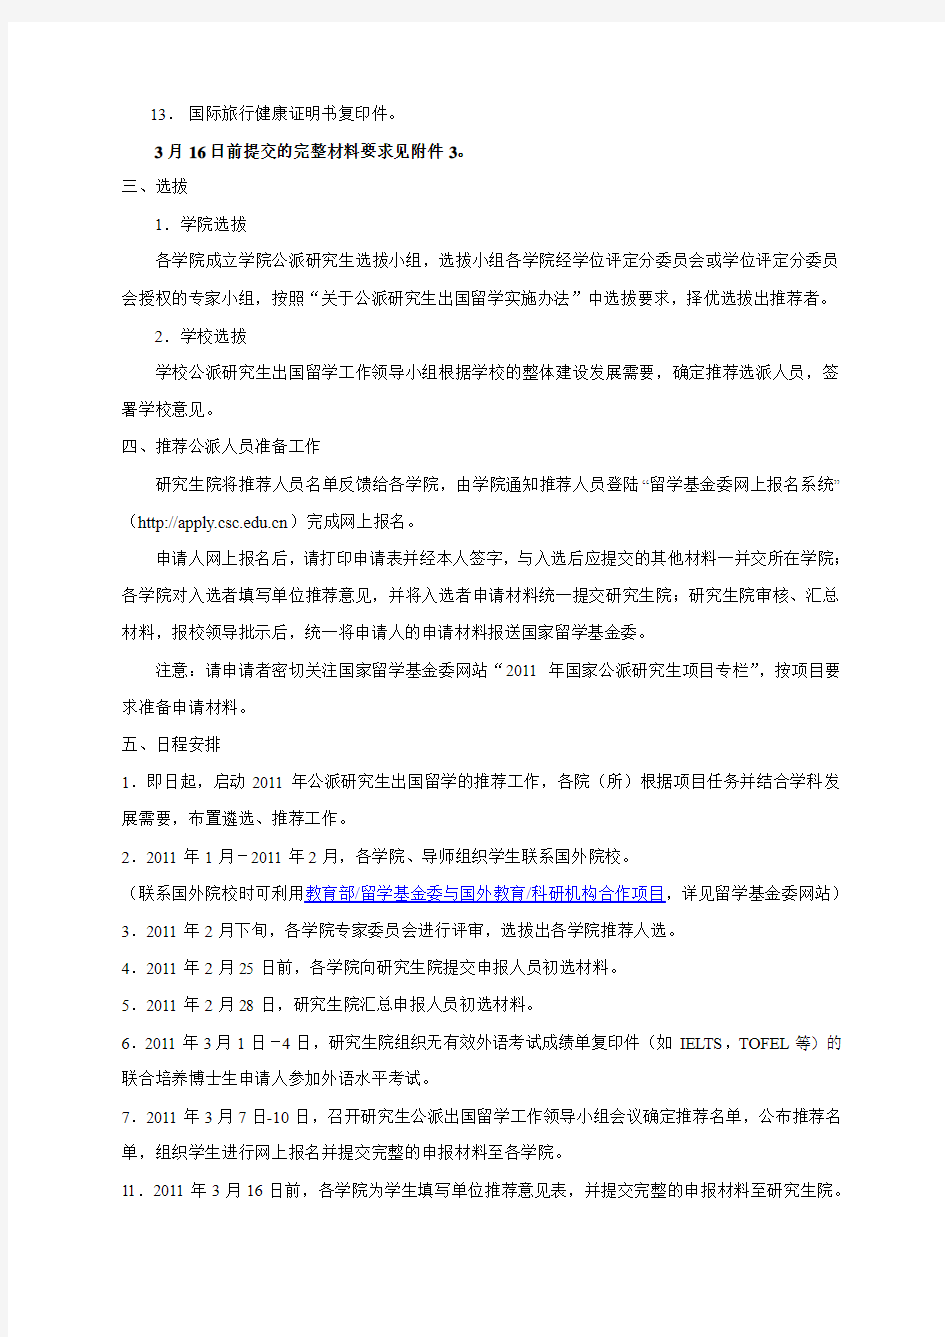 北京工业大学关于2011年公派研究生出国留学项目的通知